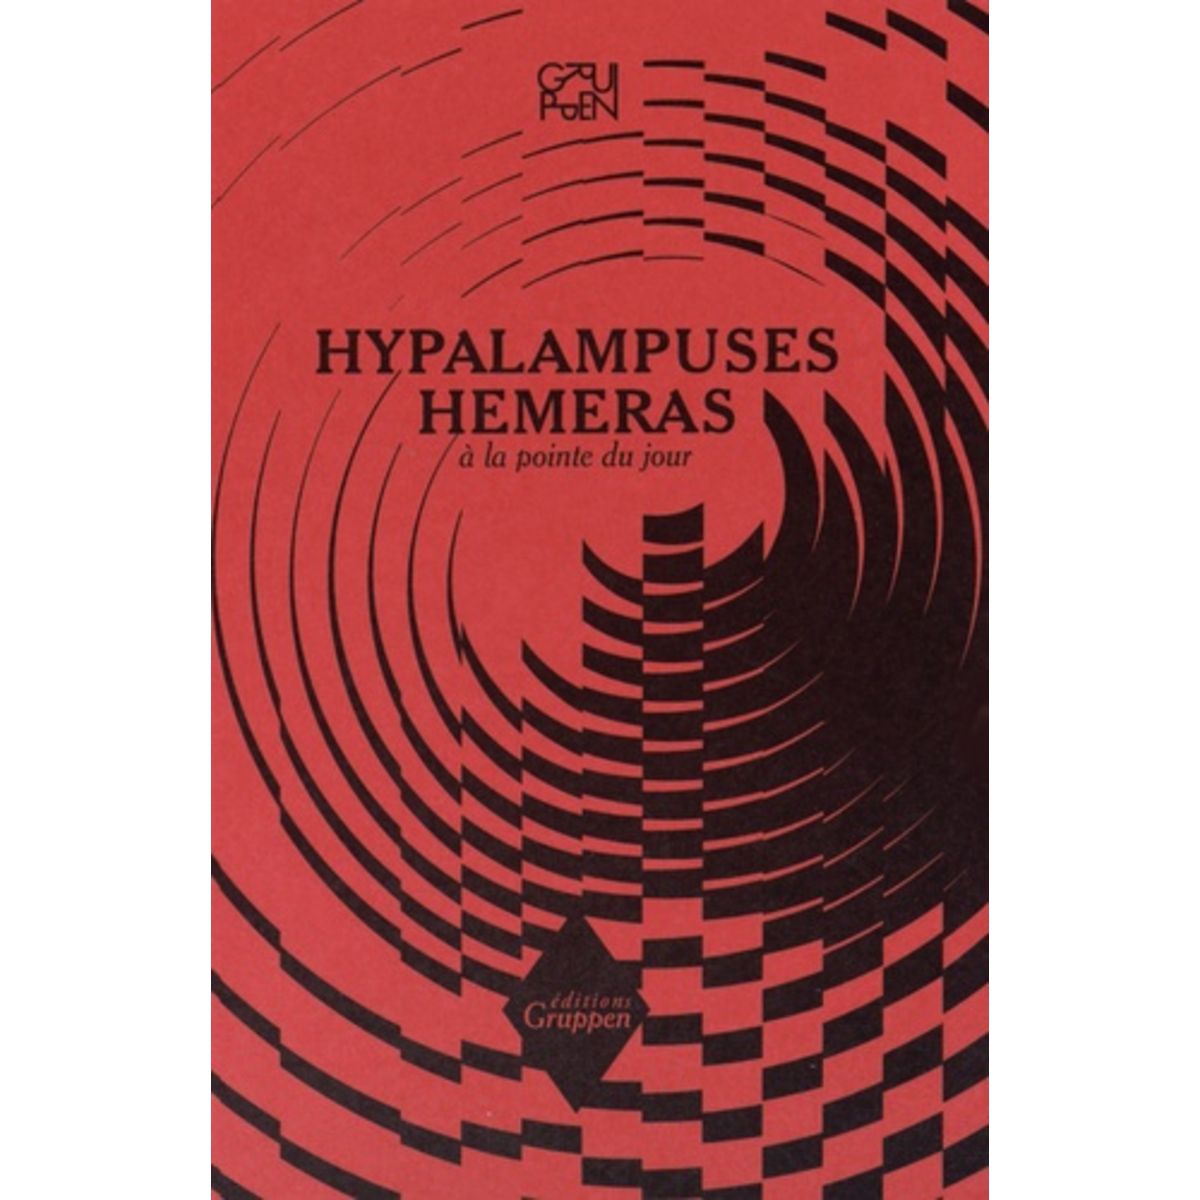  HYPALAMPUSES HEMERAS. A LA POINTE DU JOUR, Gruppen Association